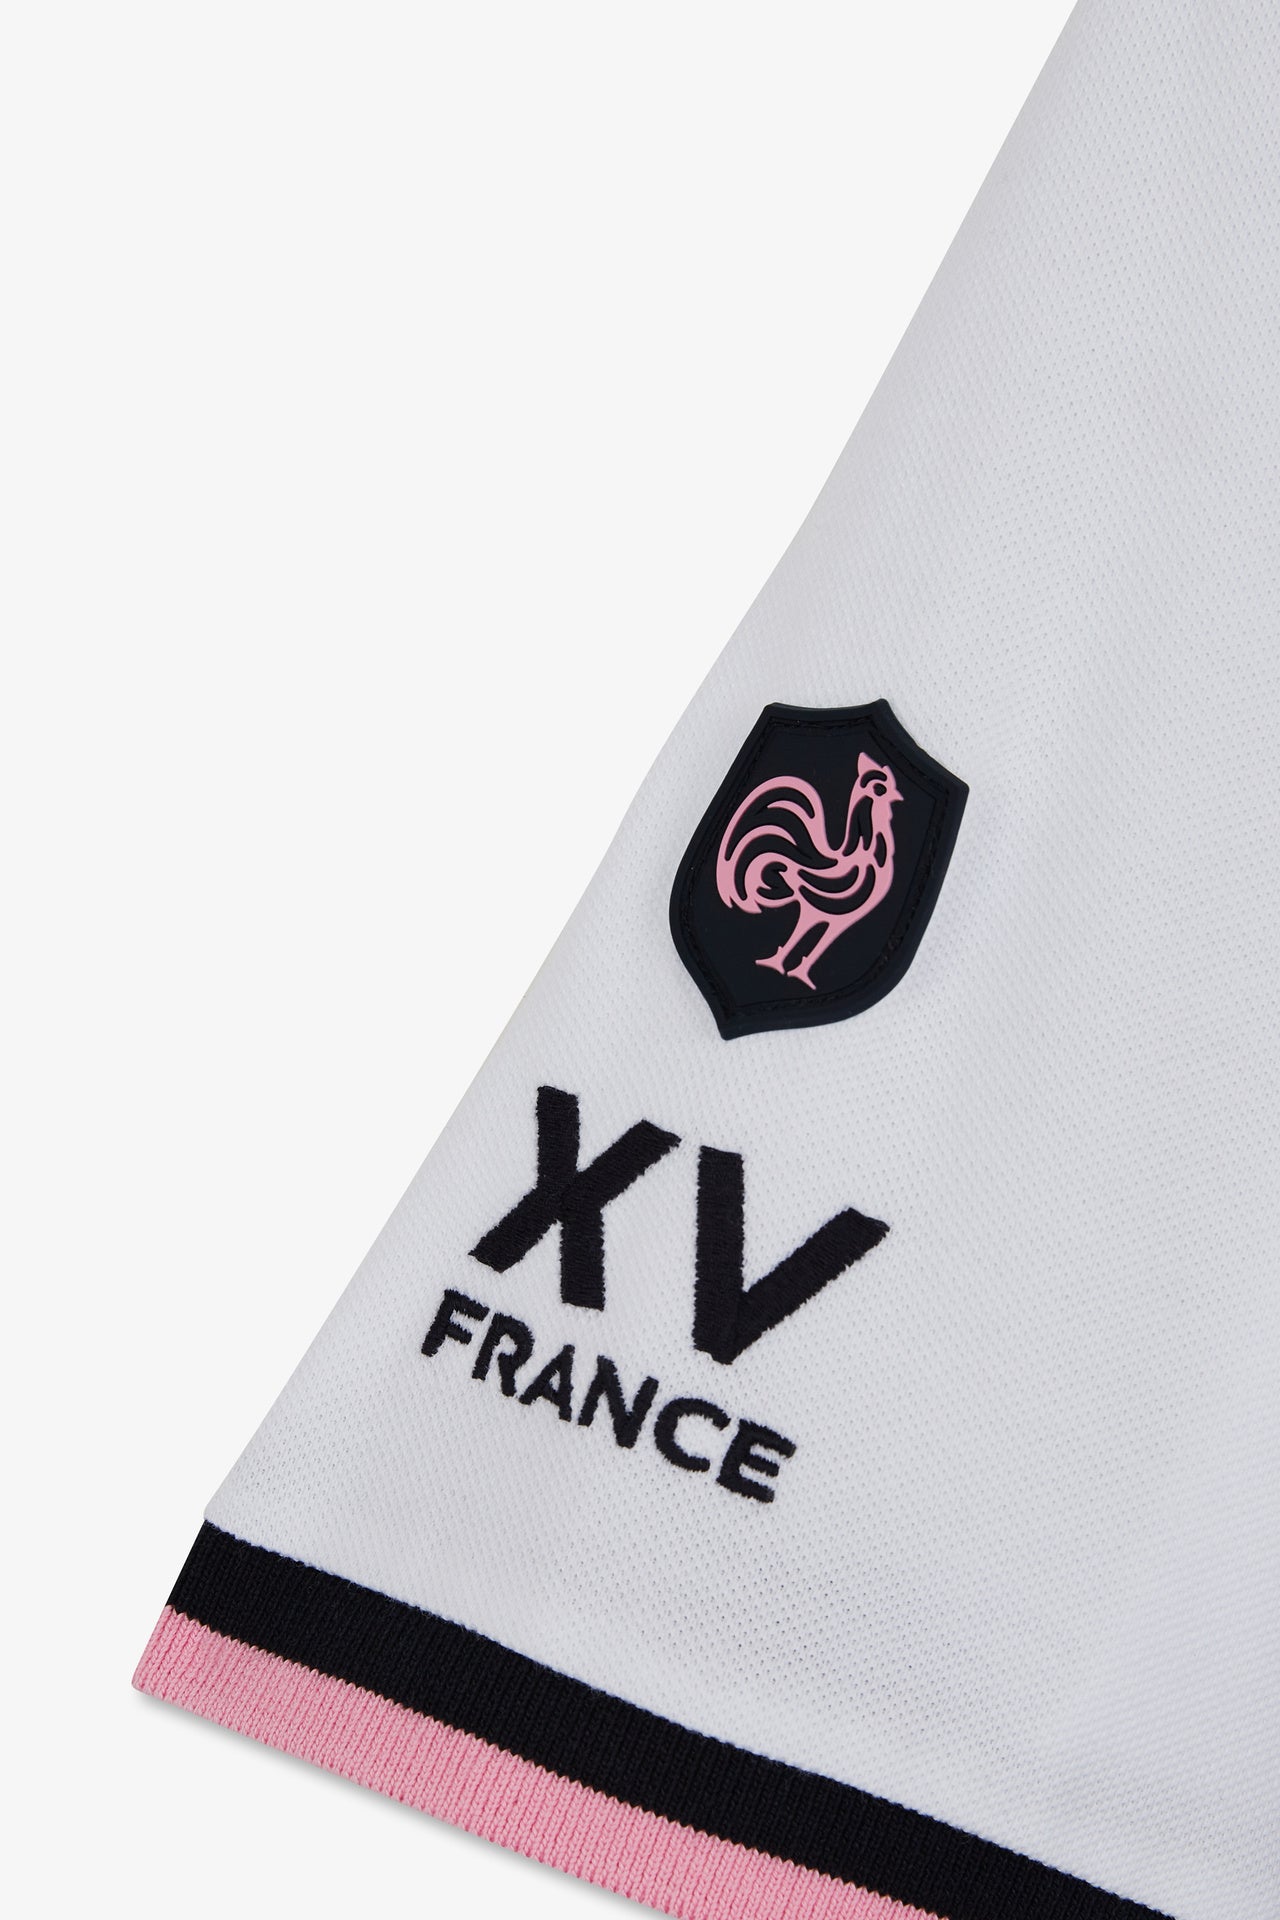 Polo colorblock à manches courtes XV de France